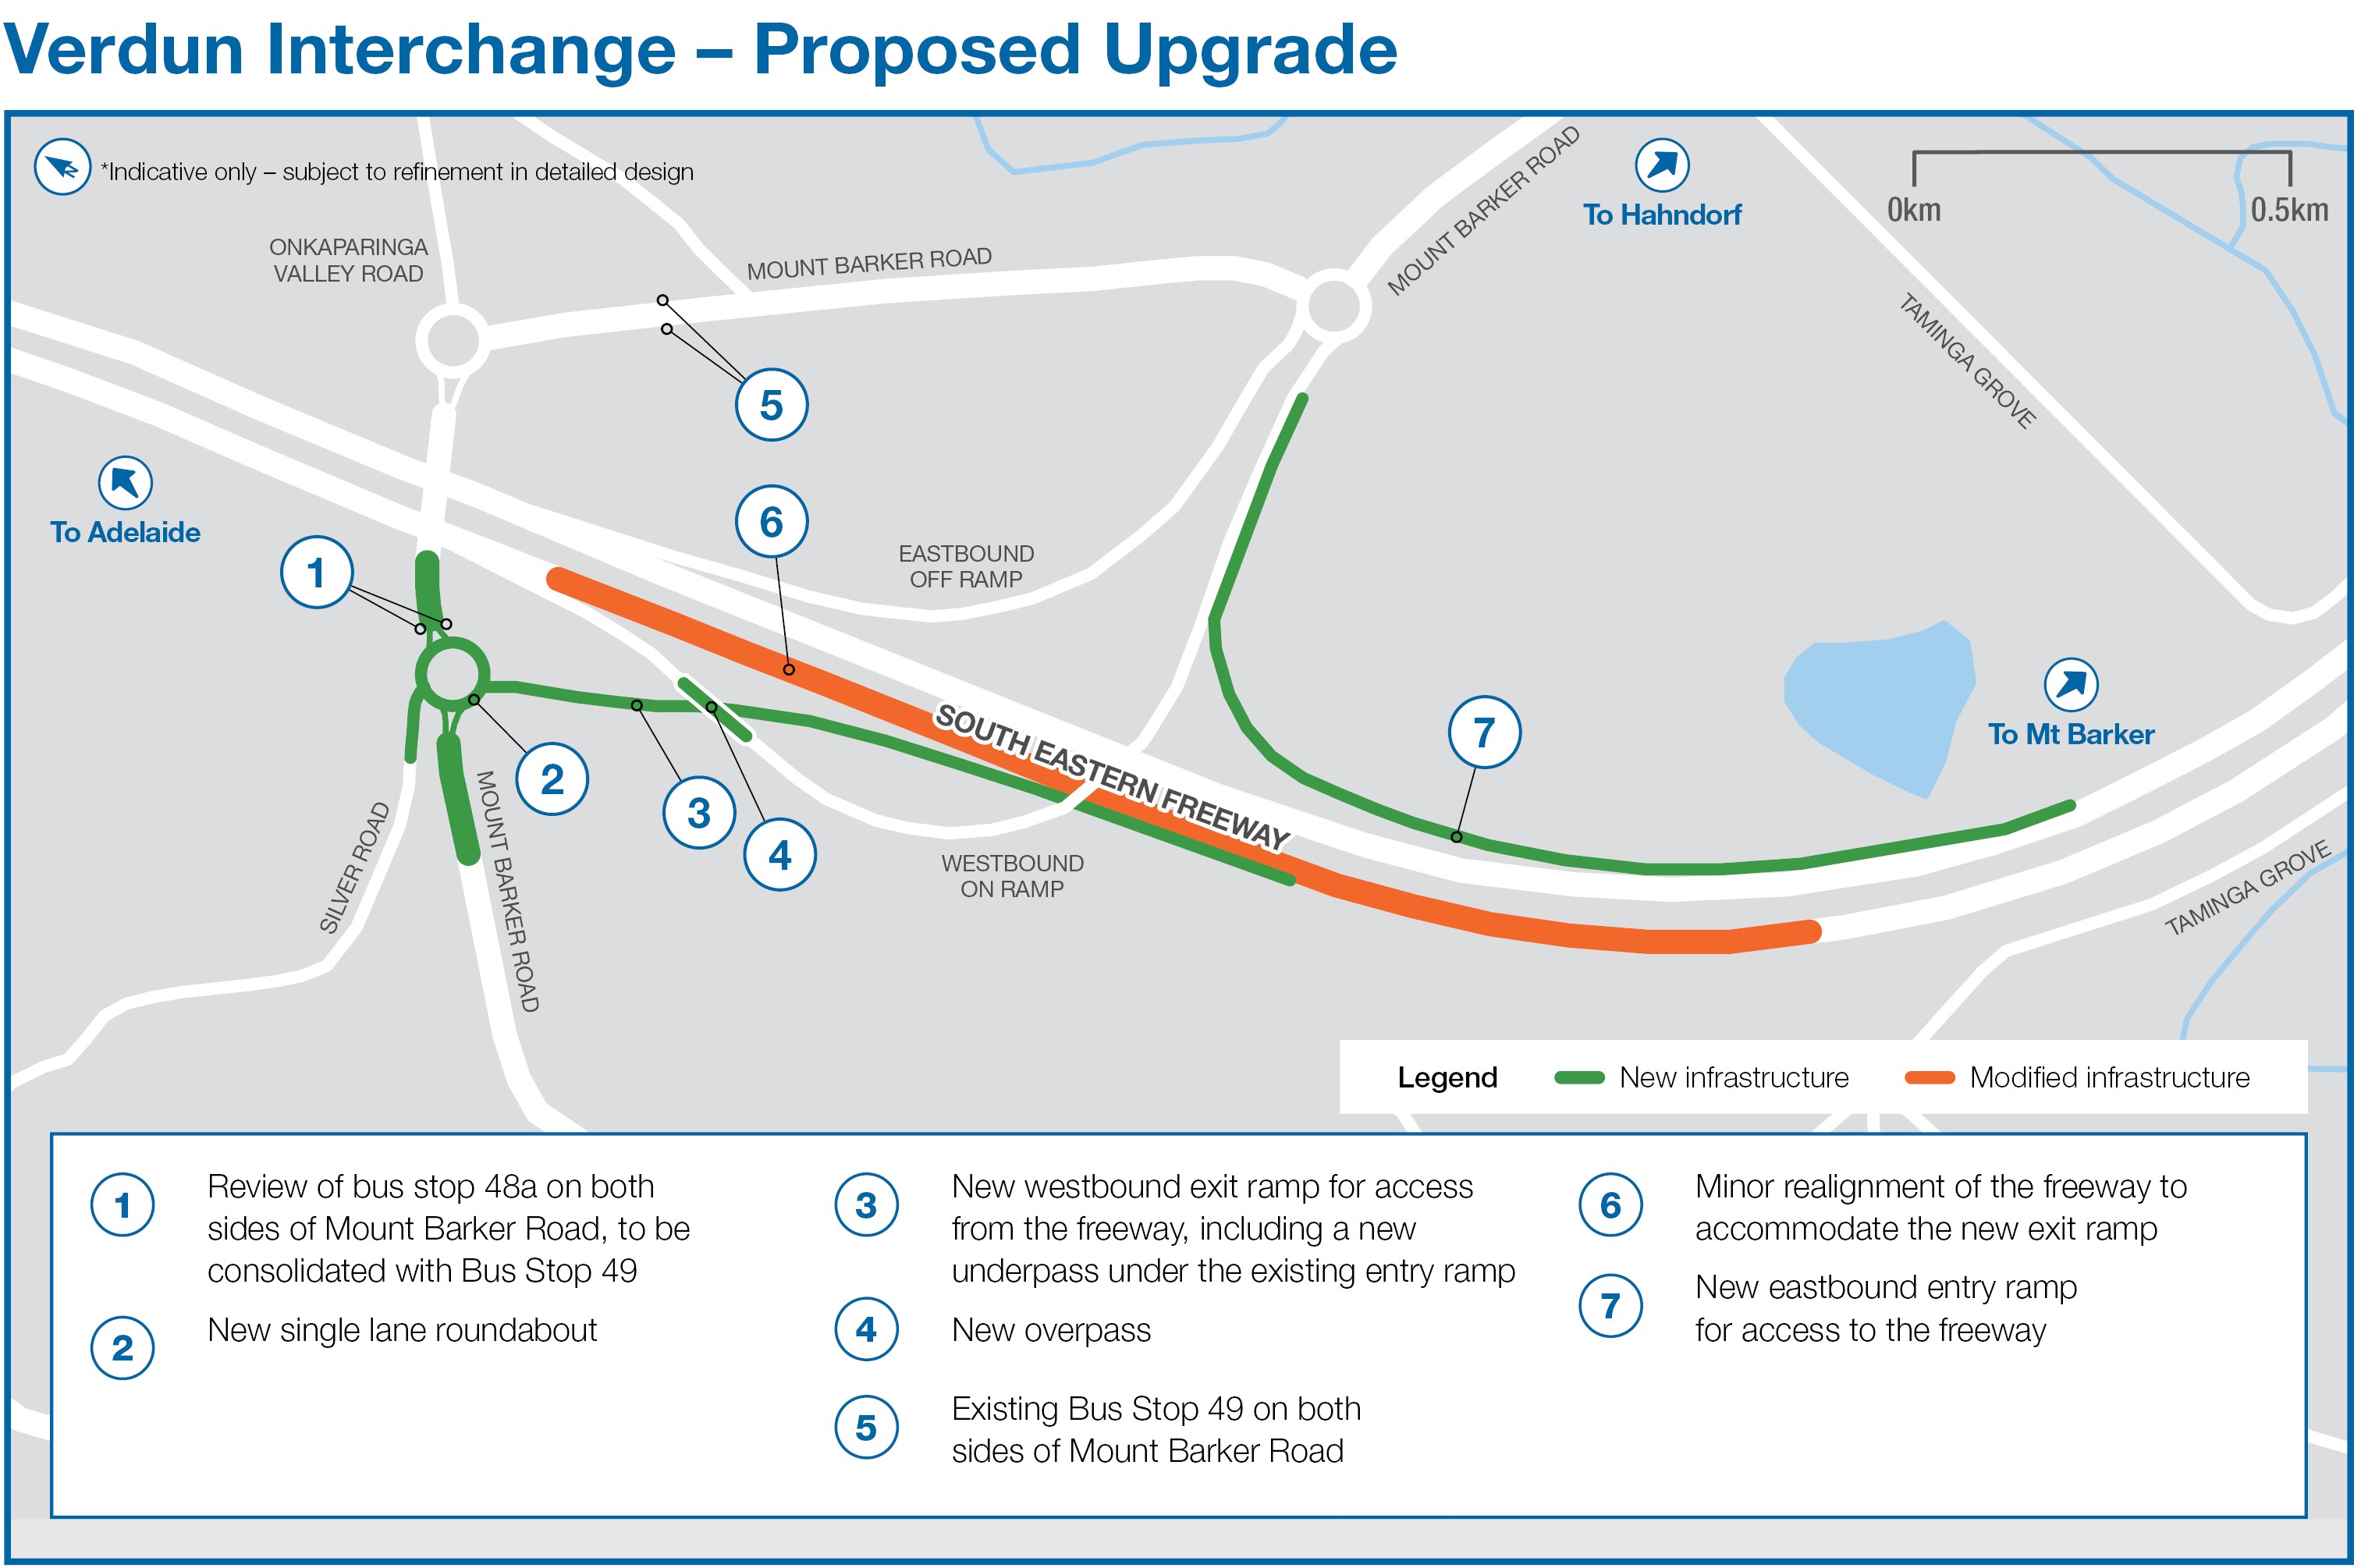 Verdun Interchange Proposed upgrade image